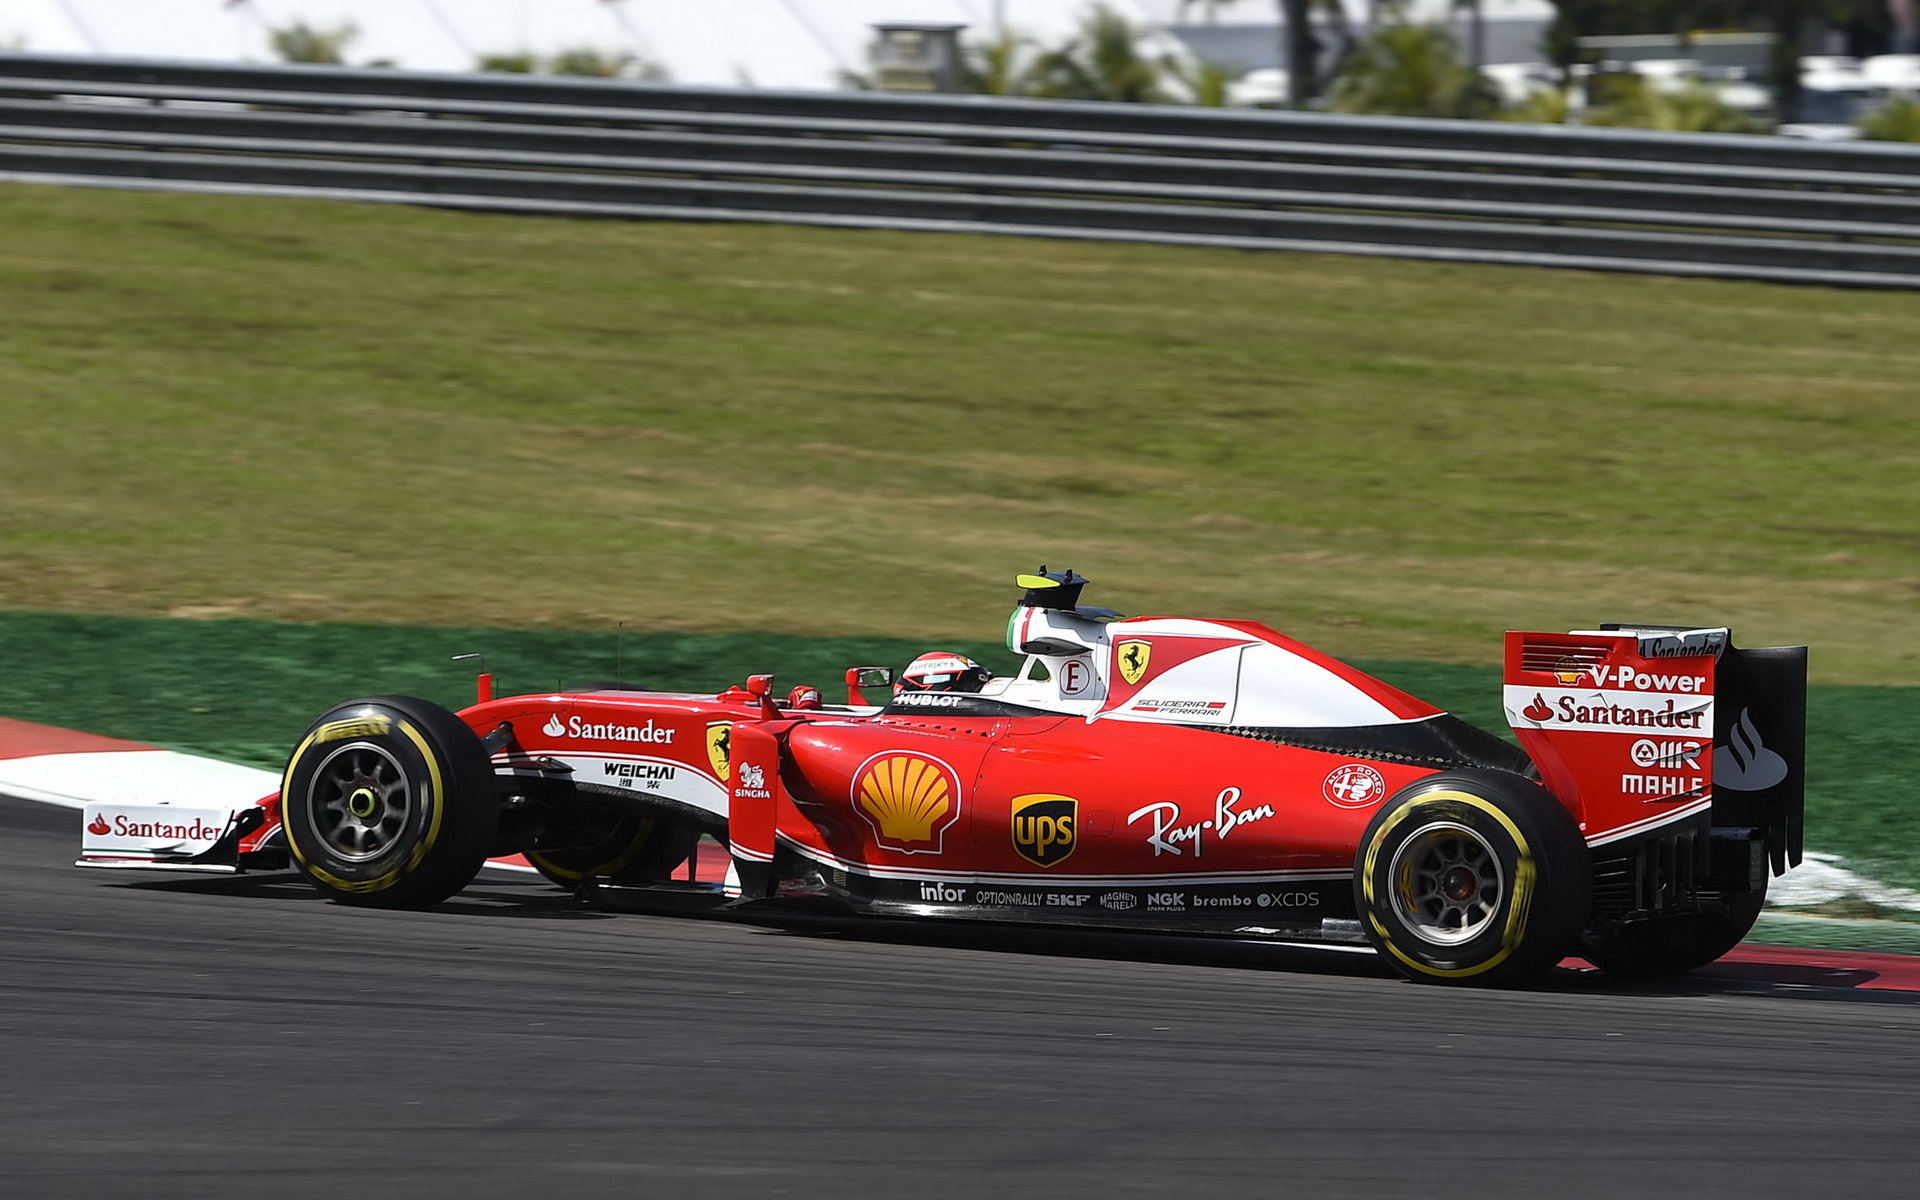 Kimi Räikkönen při pátečním tréninku v Malajsii